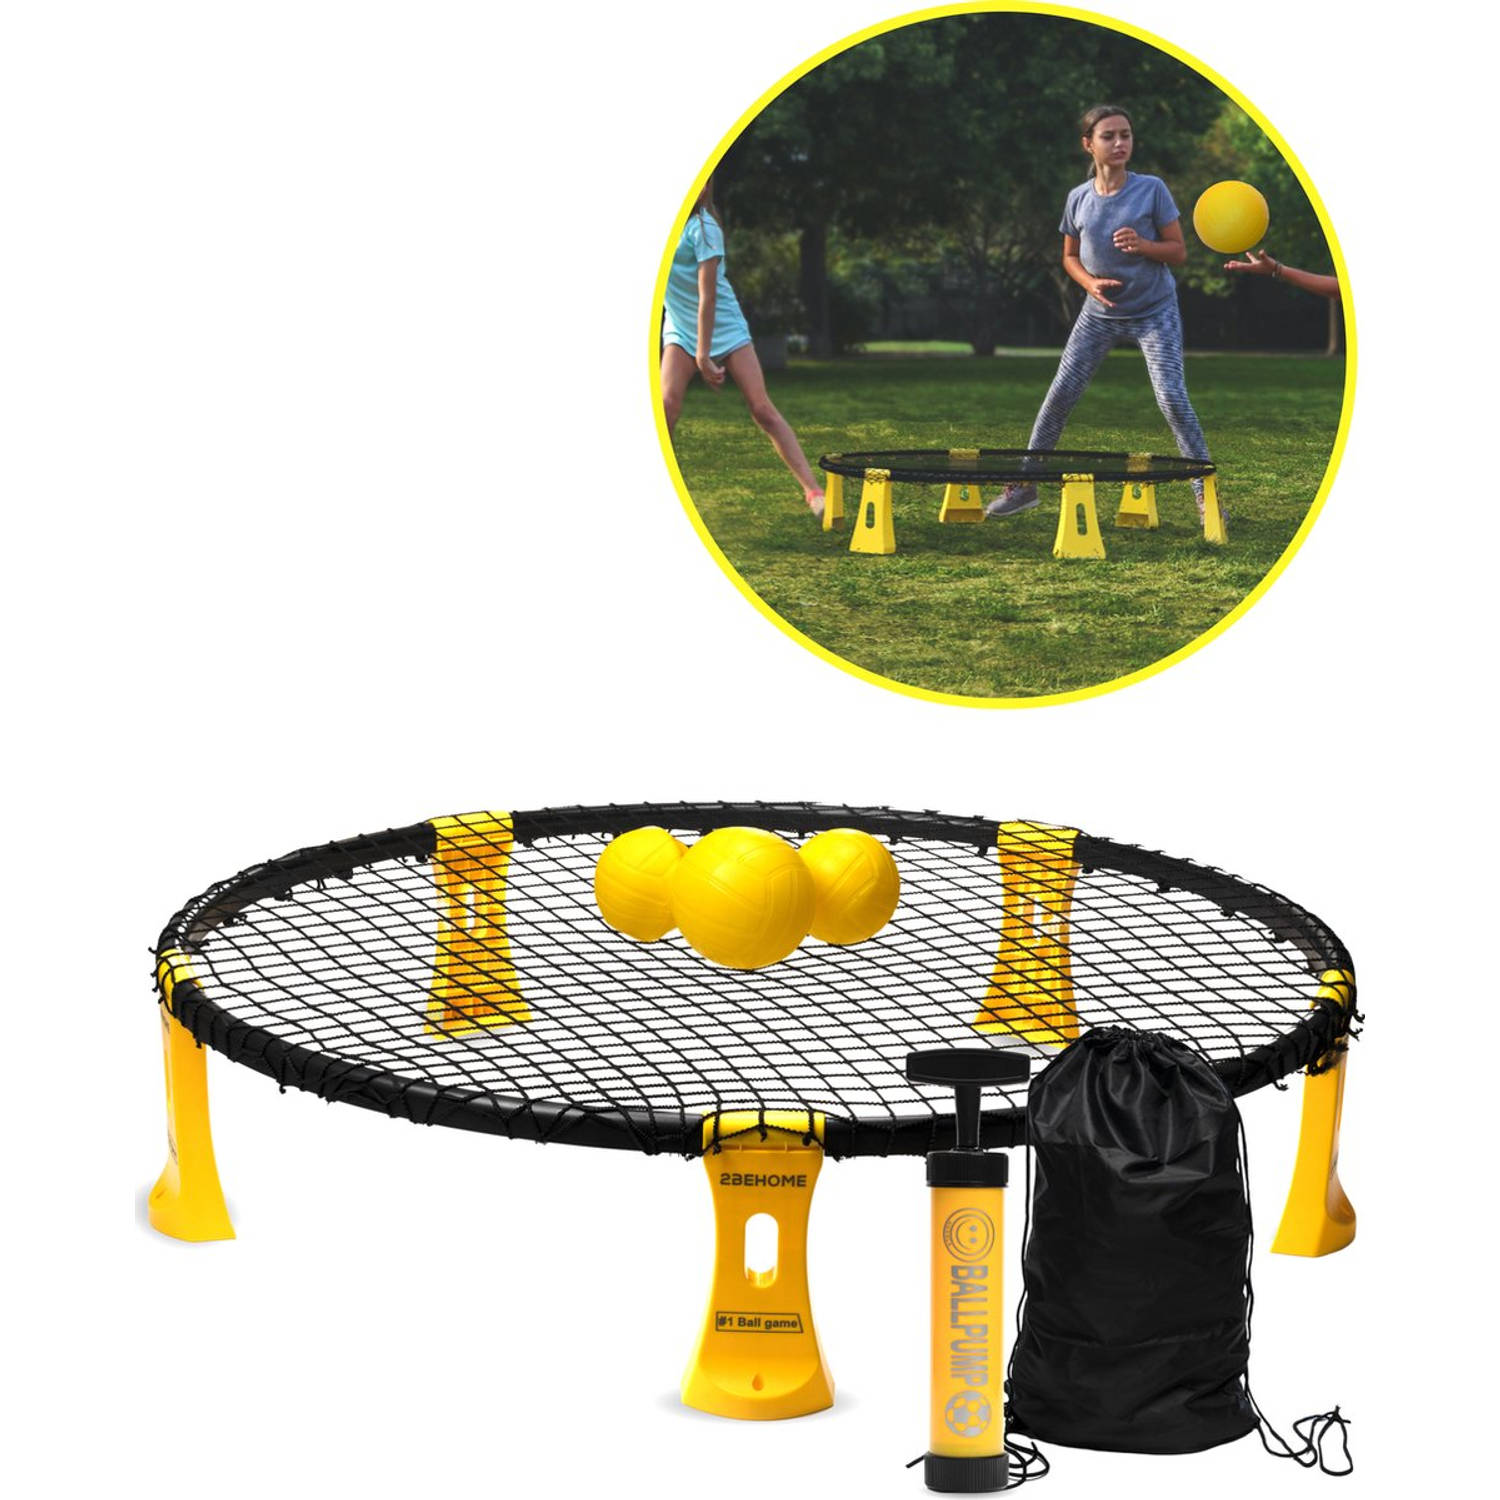 2BEHOME Roundnet set - Met LED-strip, 3 ballen, ballenpomp en meeneemtas - Geschikt voor spikeball / roundball - Geel